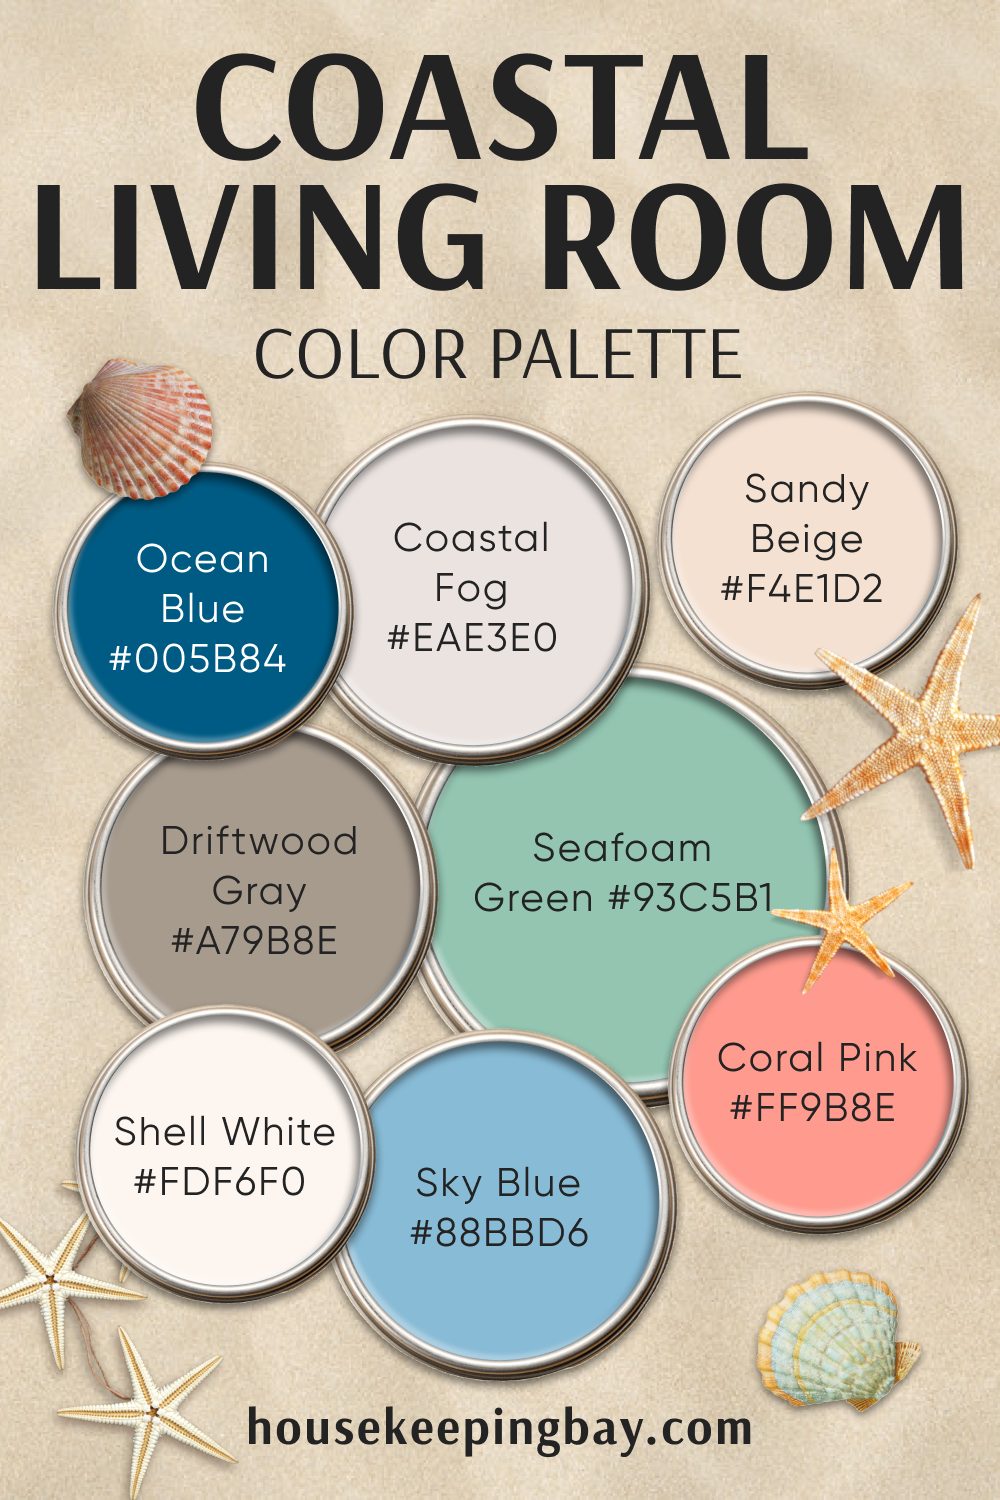 Coastal Living Room – Color Palette